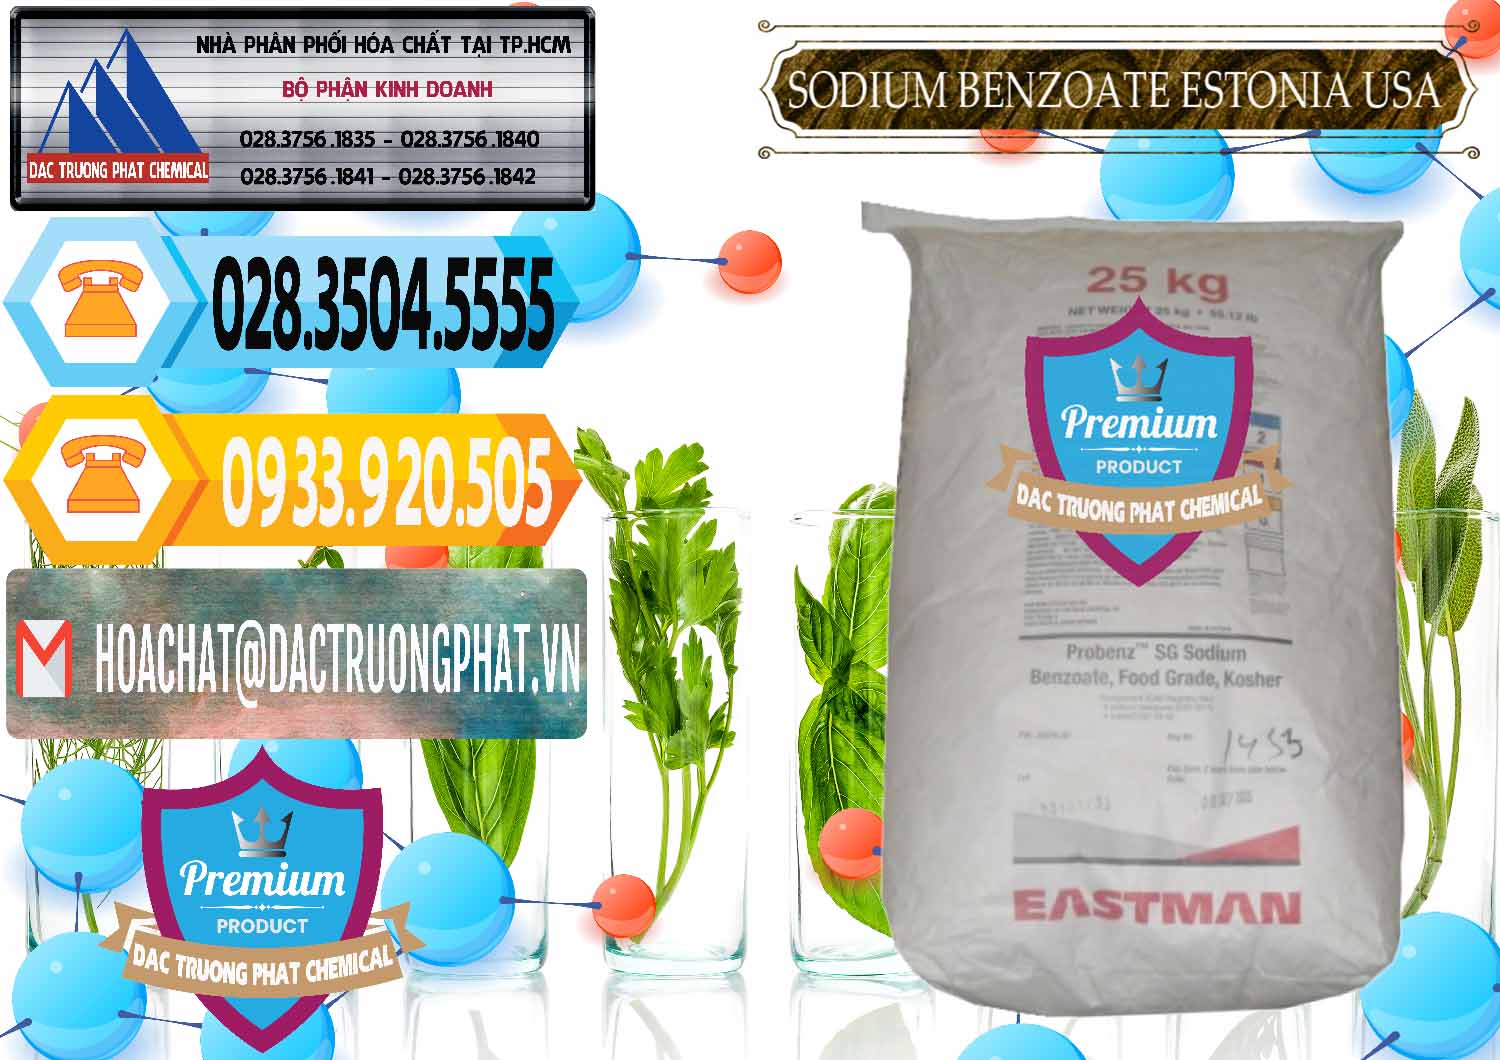 Công ty kinh doanh - bán Sodium Benzoate - Mốc Bột Estonia Mỹ USA - 0468 - Nhà phân phối - cung cấp hóa chất tại TP.HCM - hoachattayrua.net